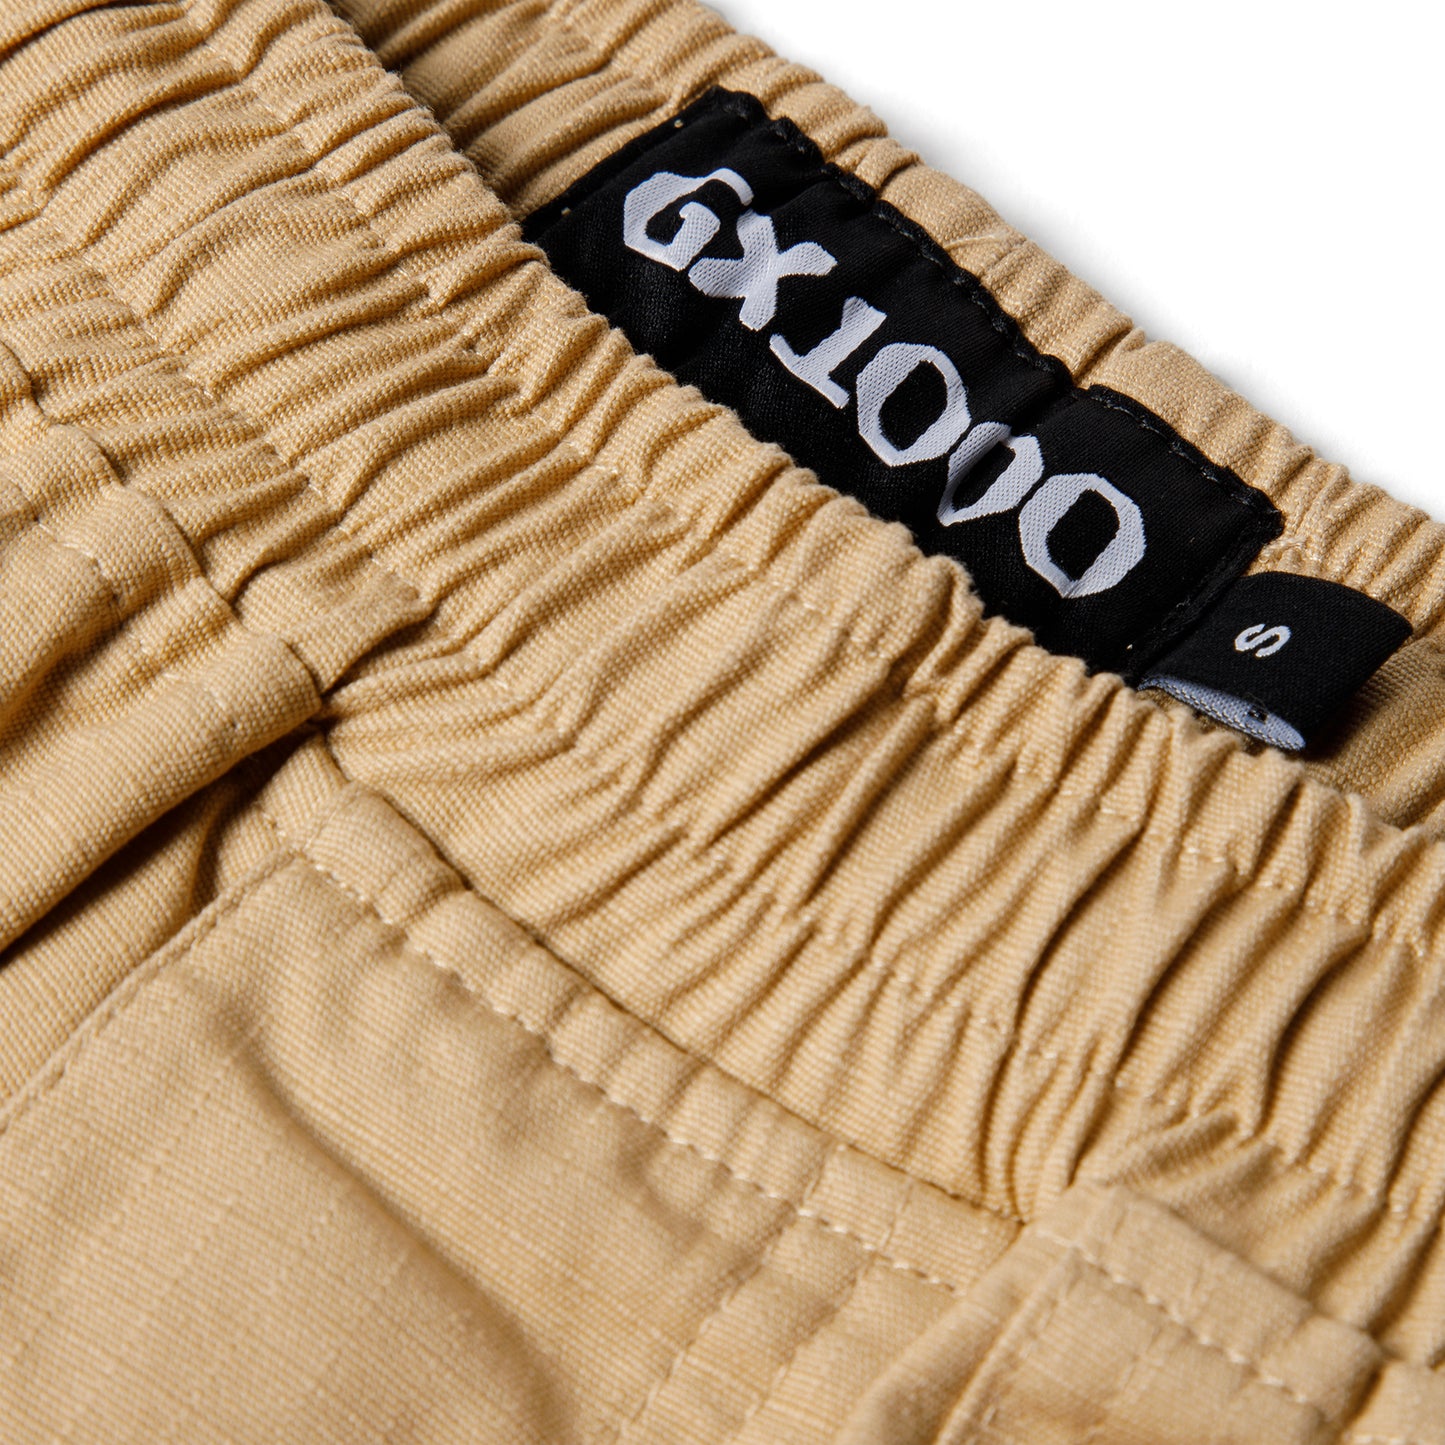 GX1000 Dojo Pants (Khaki)